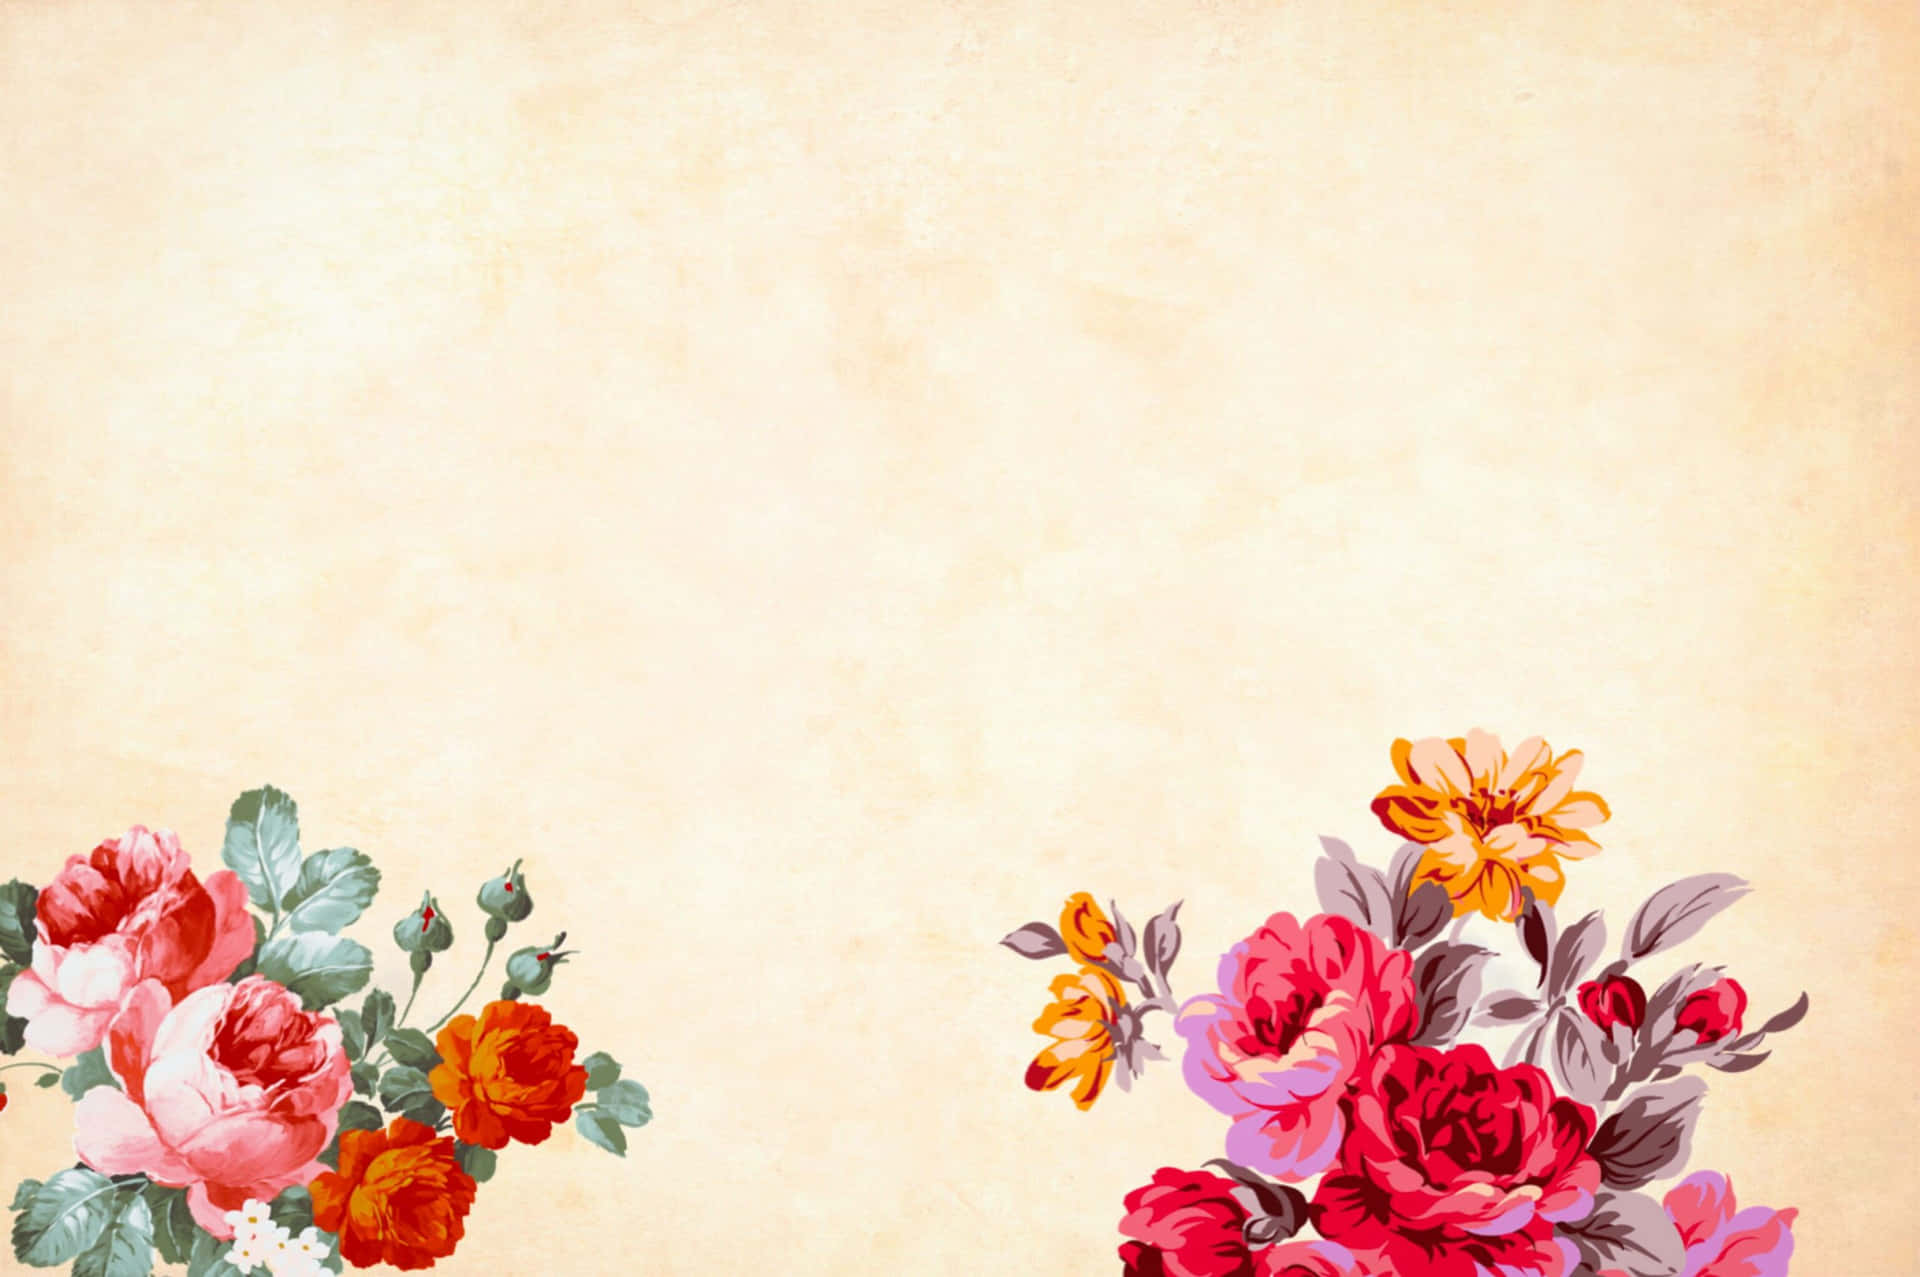 Engammaldags Bakgrund Med Blommor Wallpaper